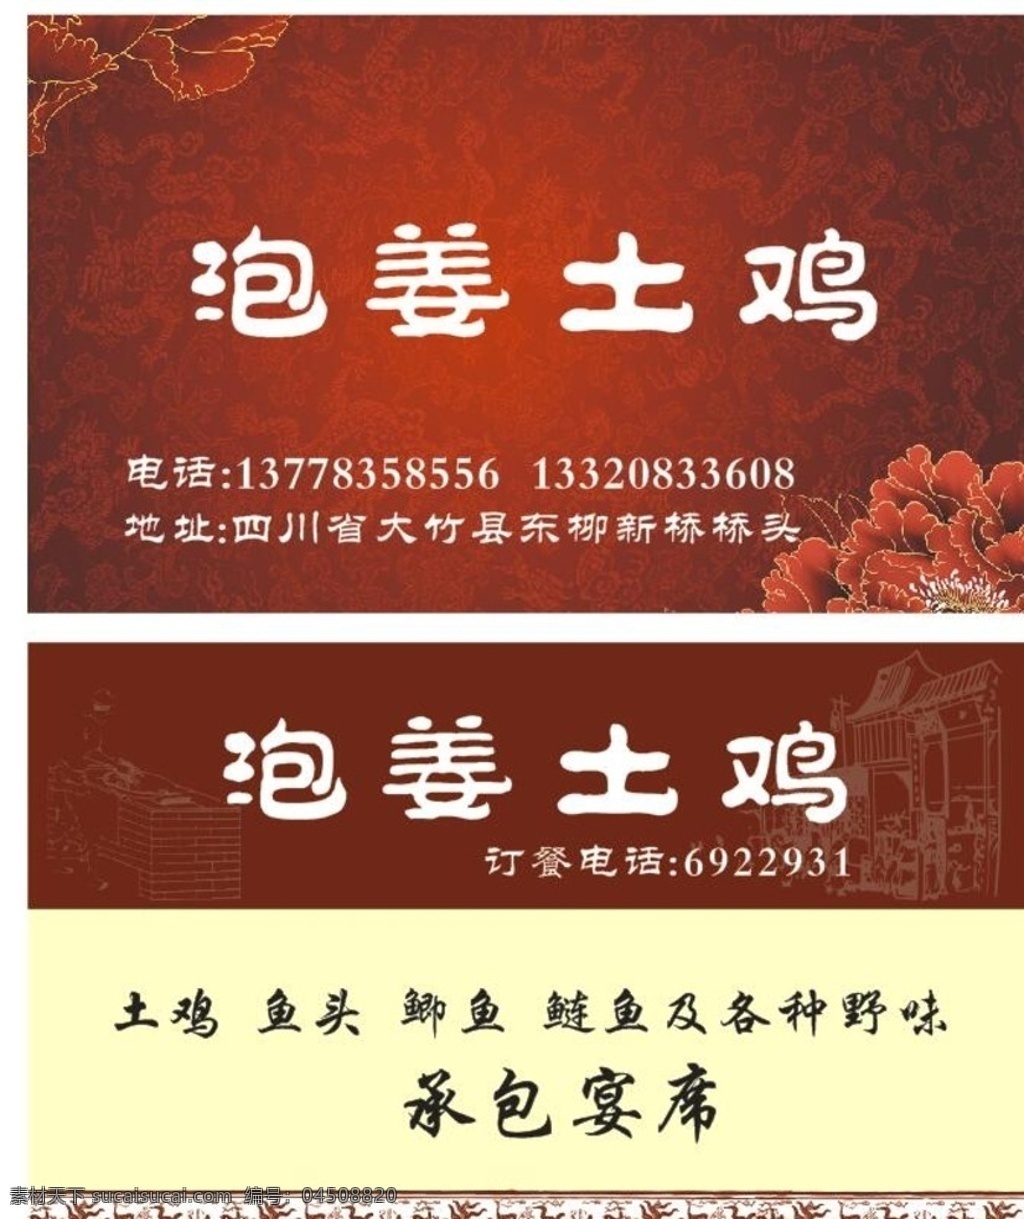 泡 姜 土鸡 名片设计 土鸡名片设计 中式名片设计 高档名片 红色喜庆名片 名片 名片卡片